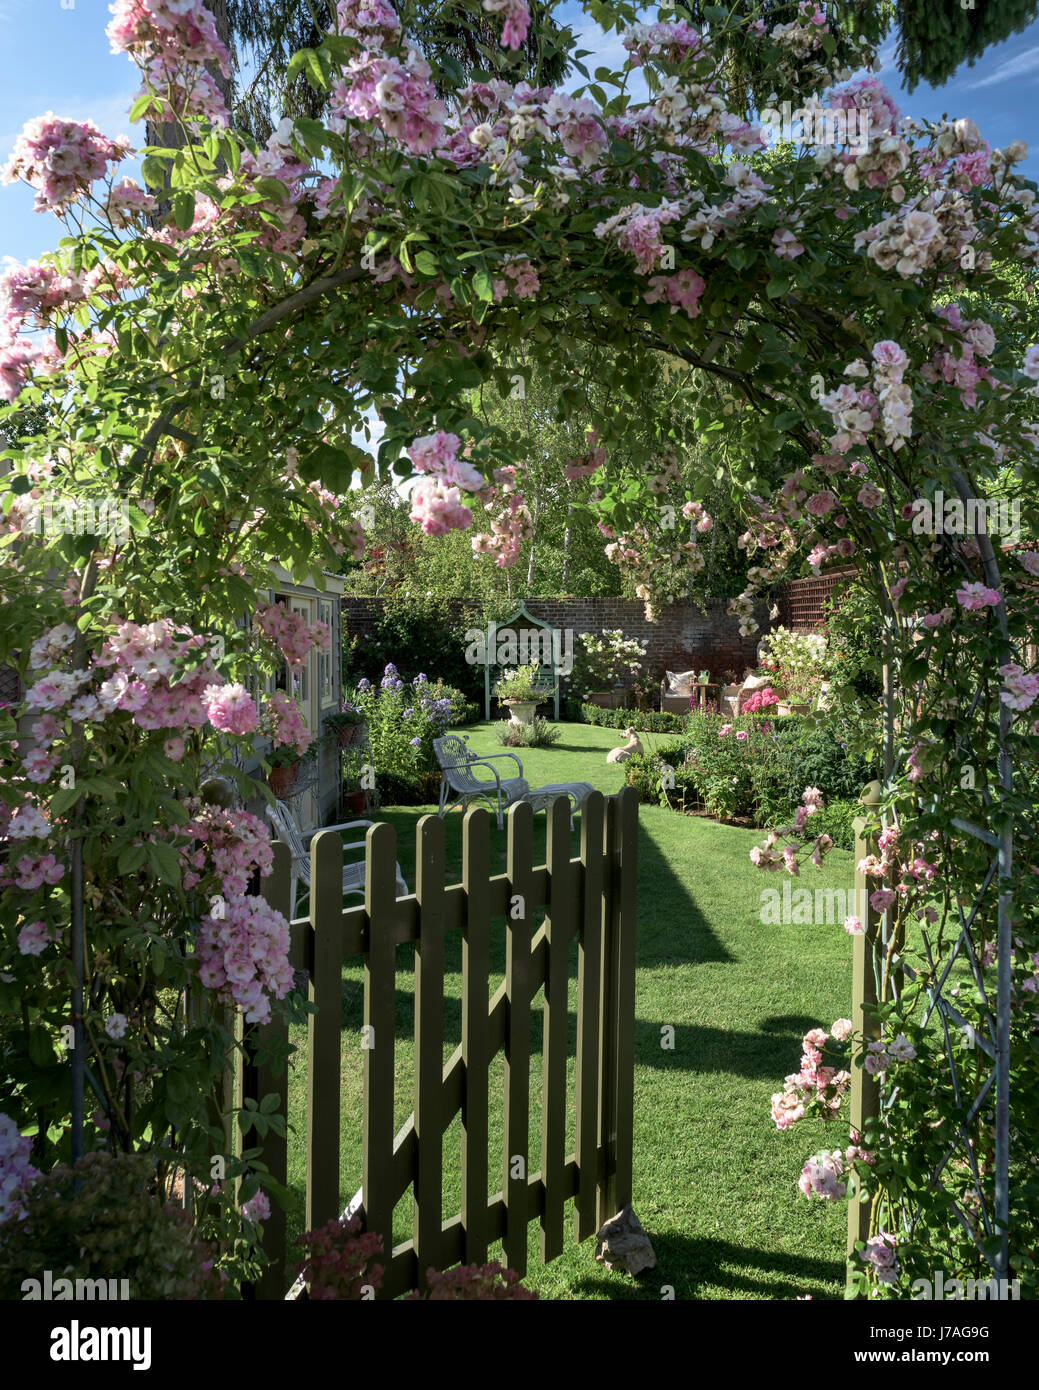 La porte de piquetage sous arch rose donnant sur charmant jardin clos anglais Banque D'Images